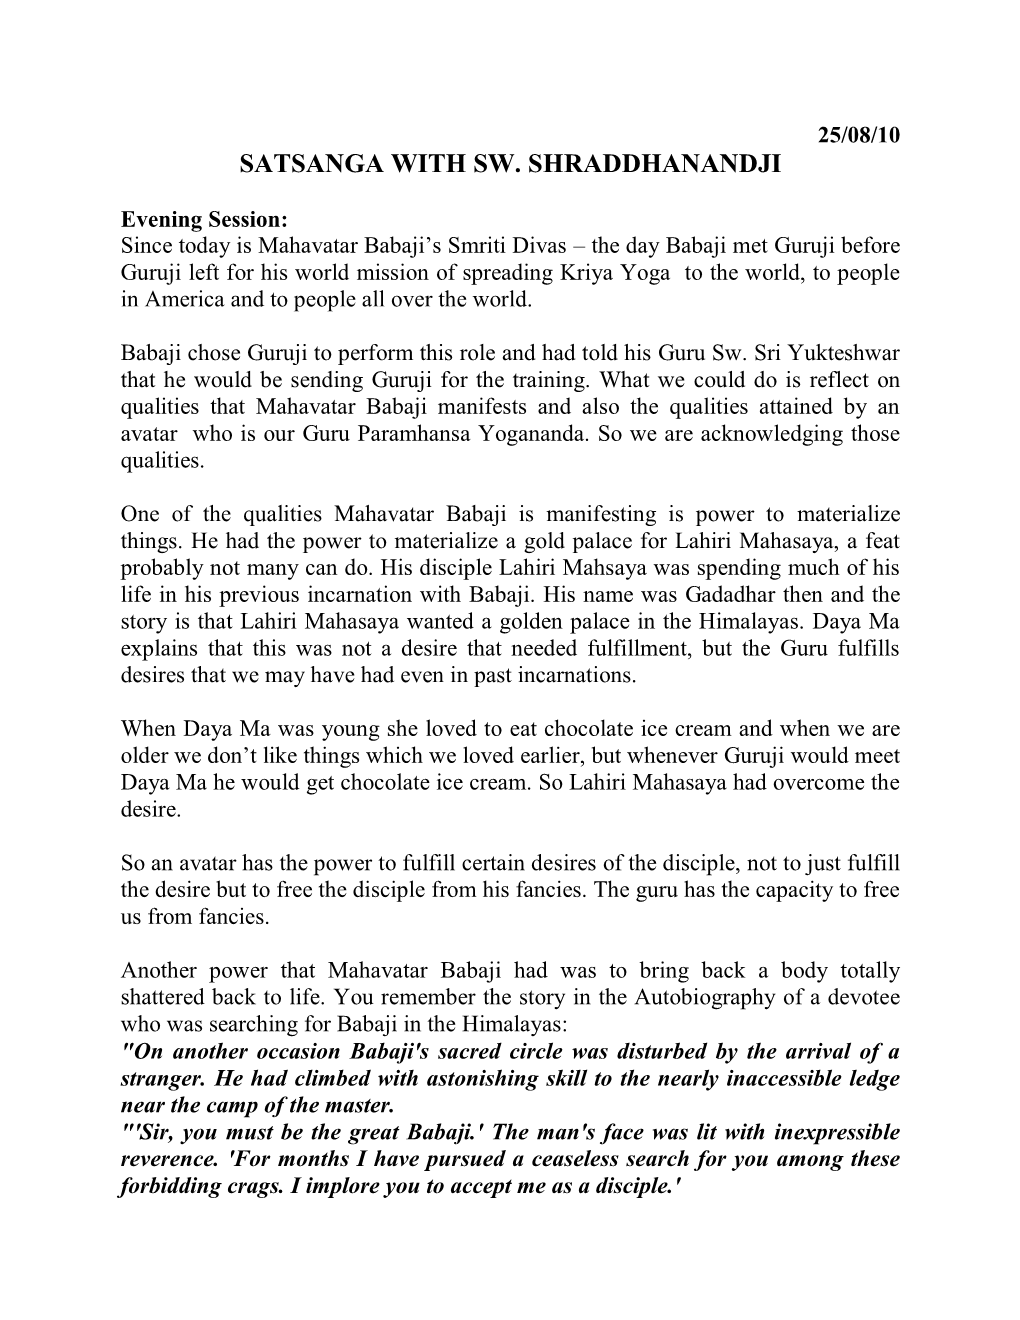 Satsanga Sw. Shraddhananda Guru Purnima 25-07-10 Evening